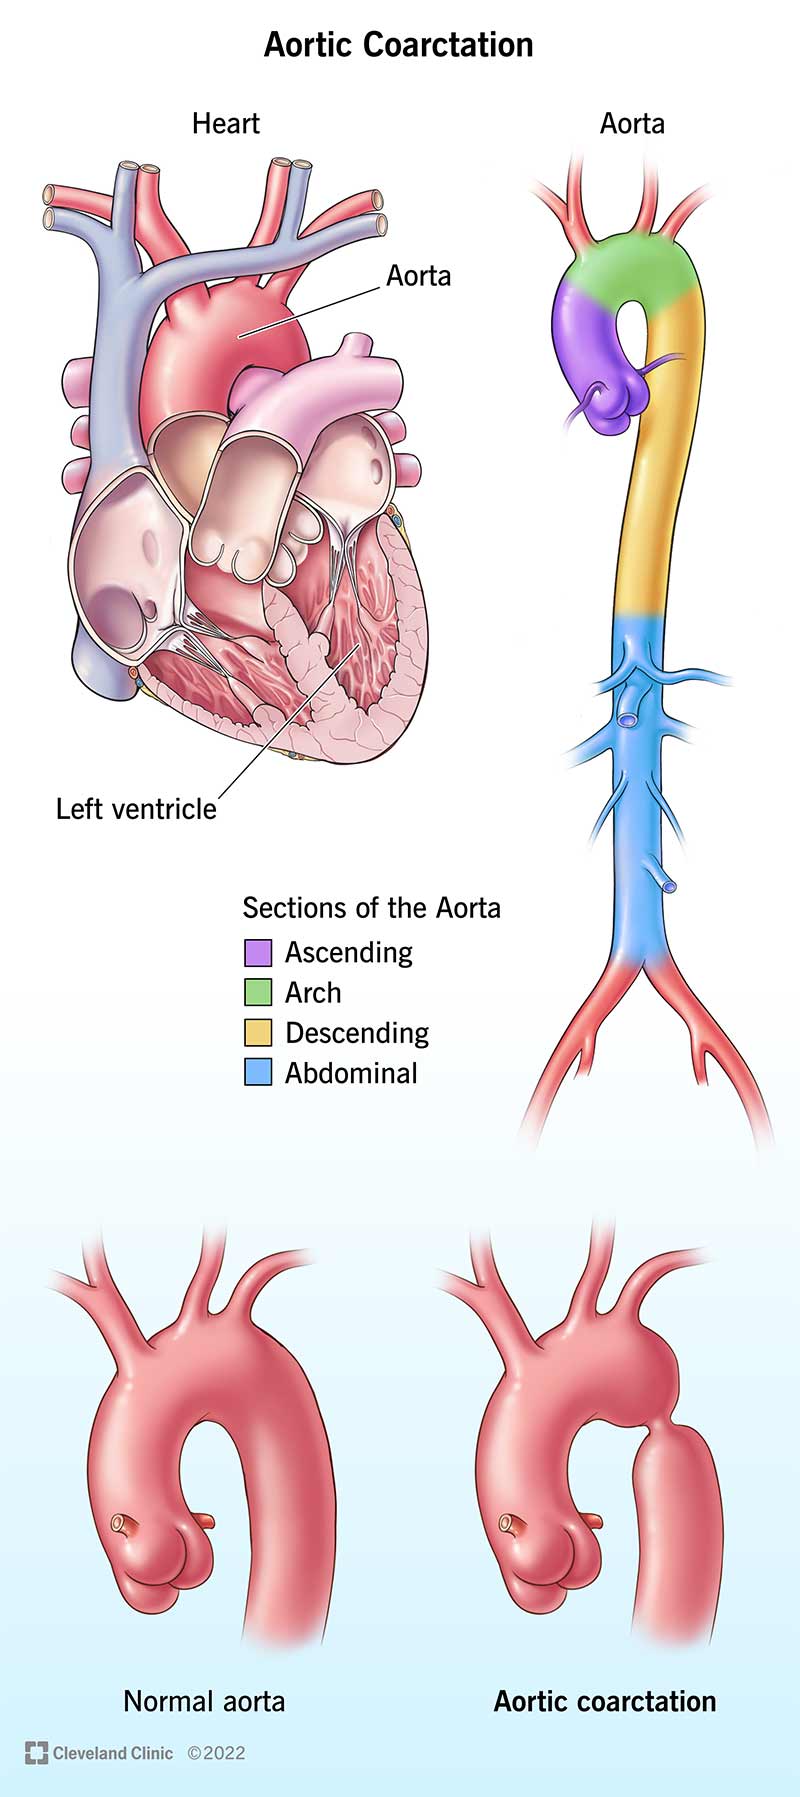 一组展示心脏和主动脉解剖的插图。并排的图片显示了健康的主动脉与狭窄的主动脉的对比。